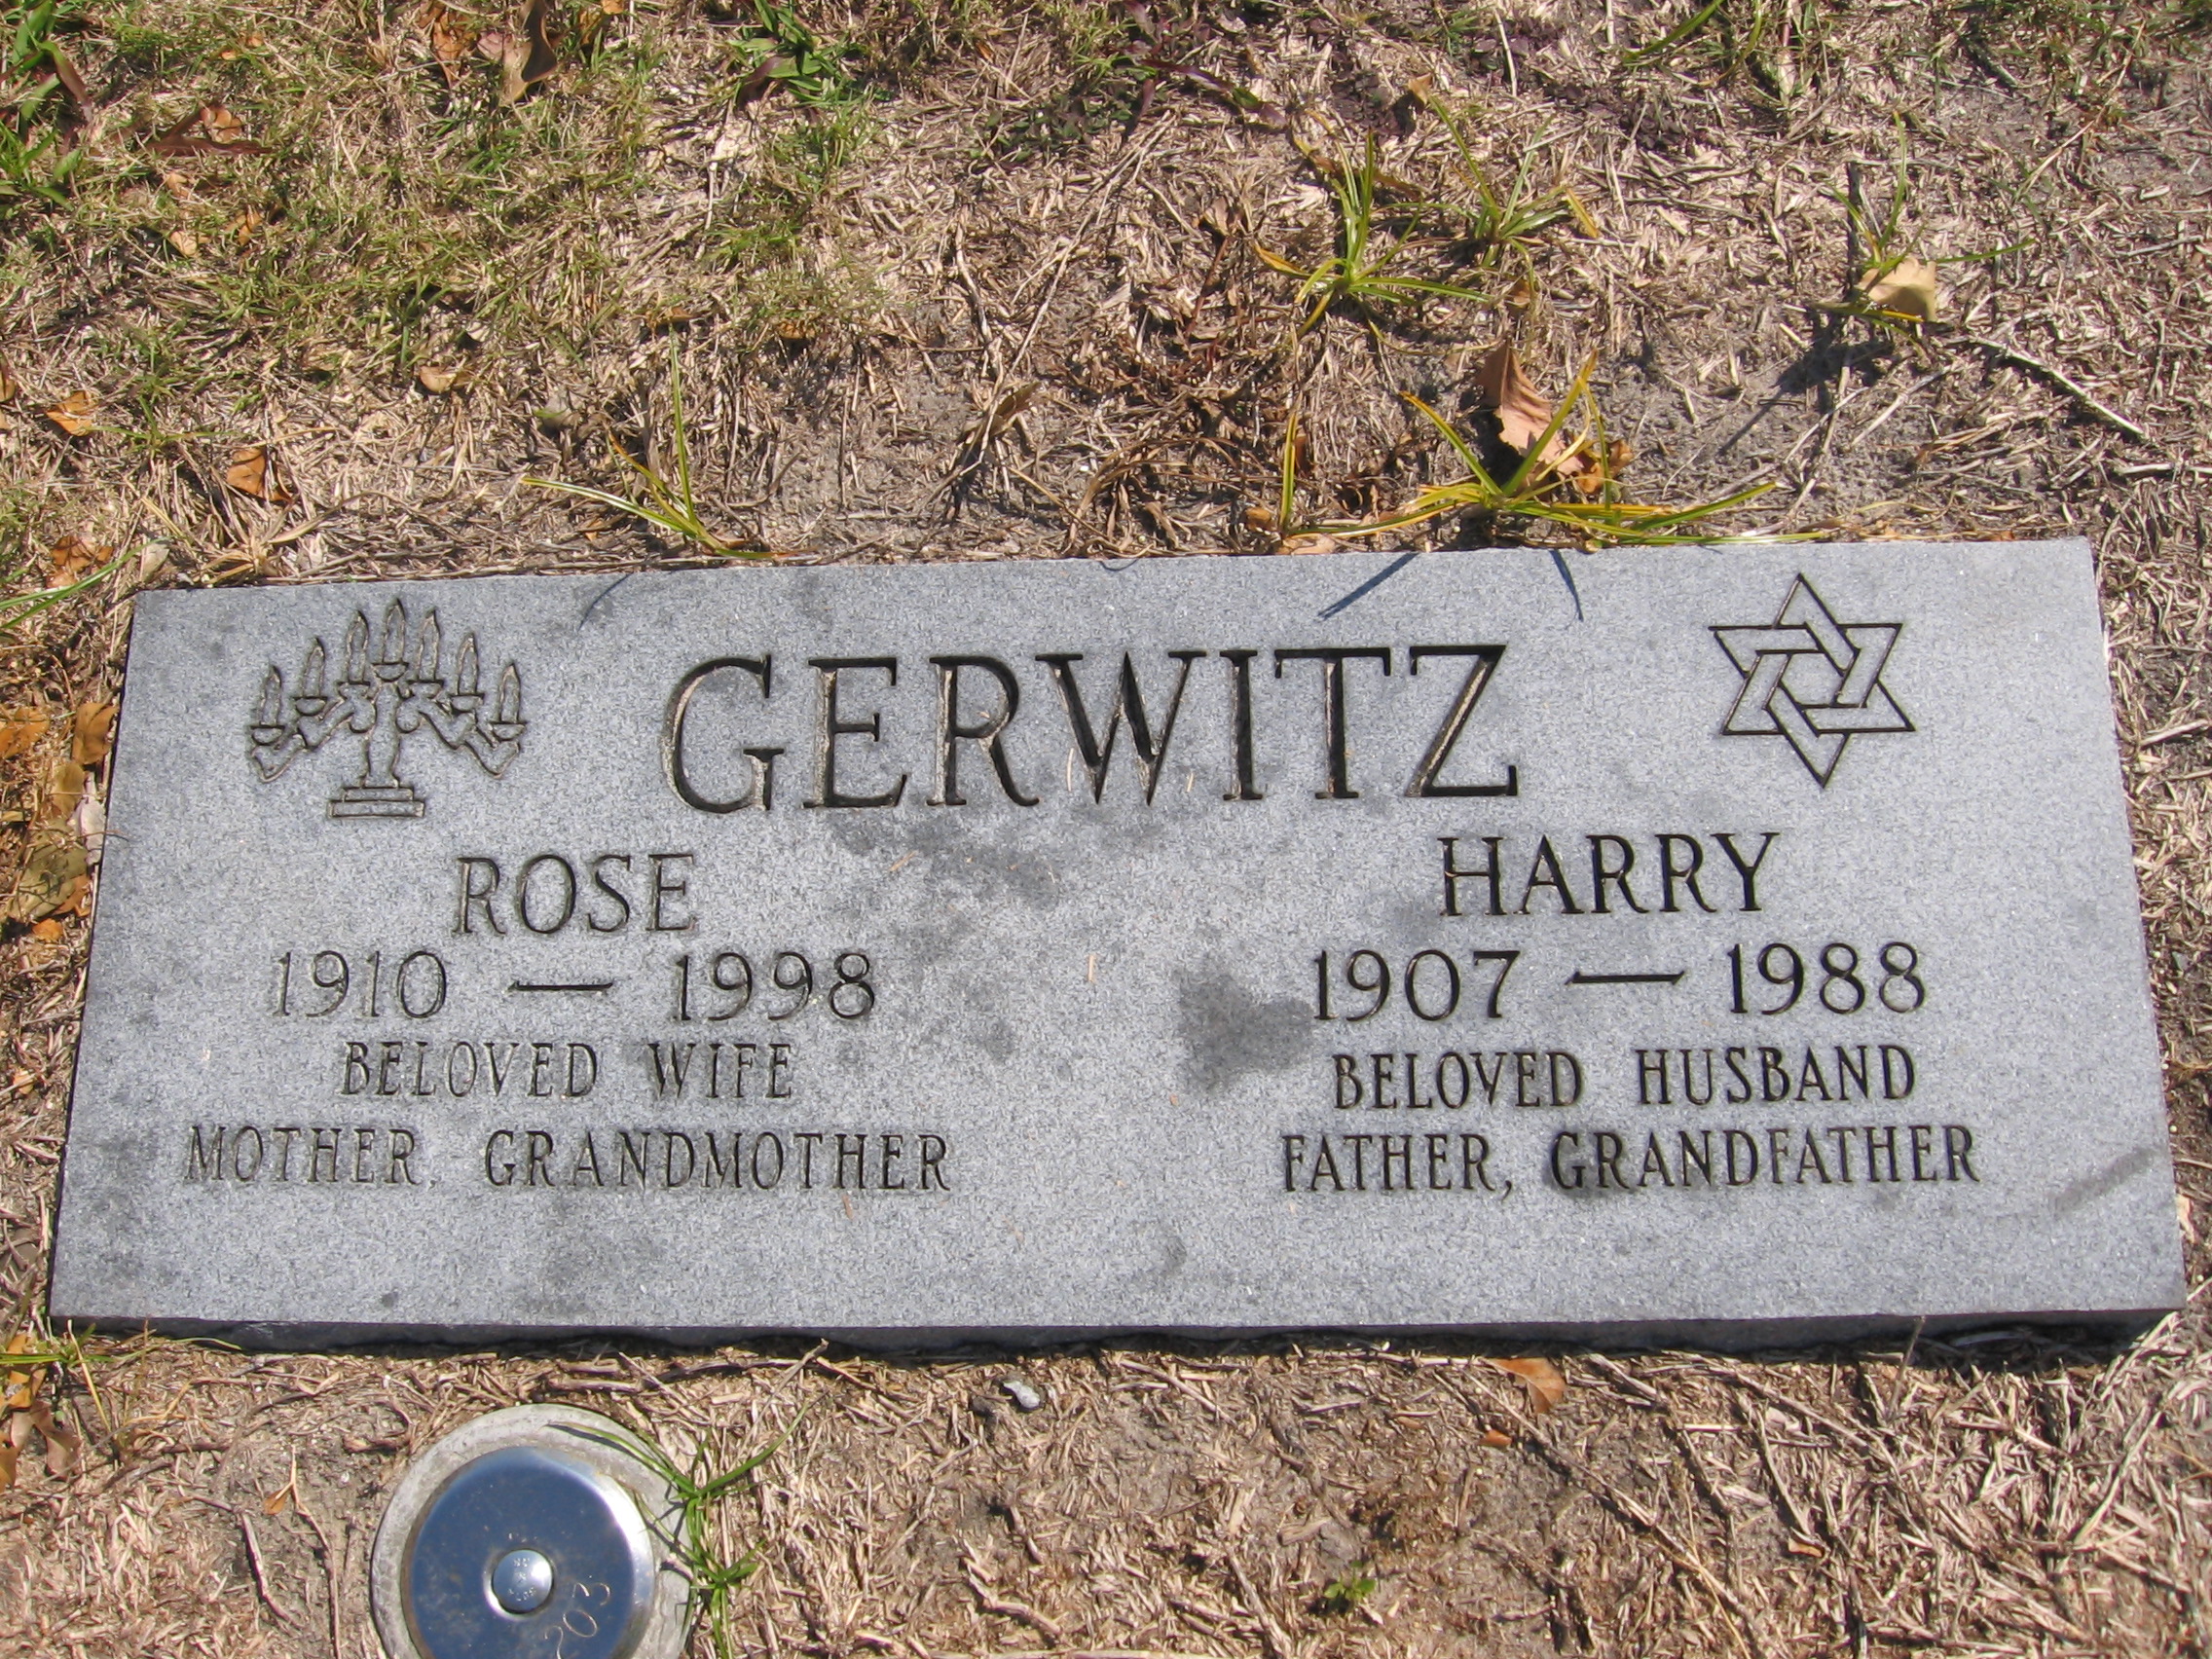 Harry Gerwitz